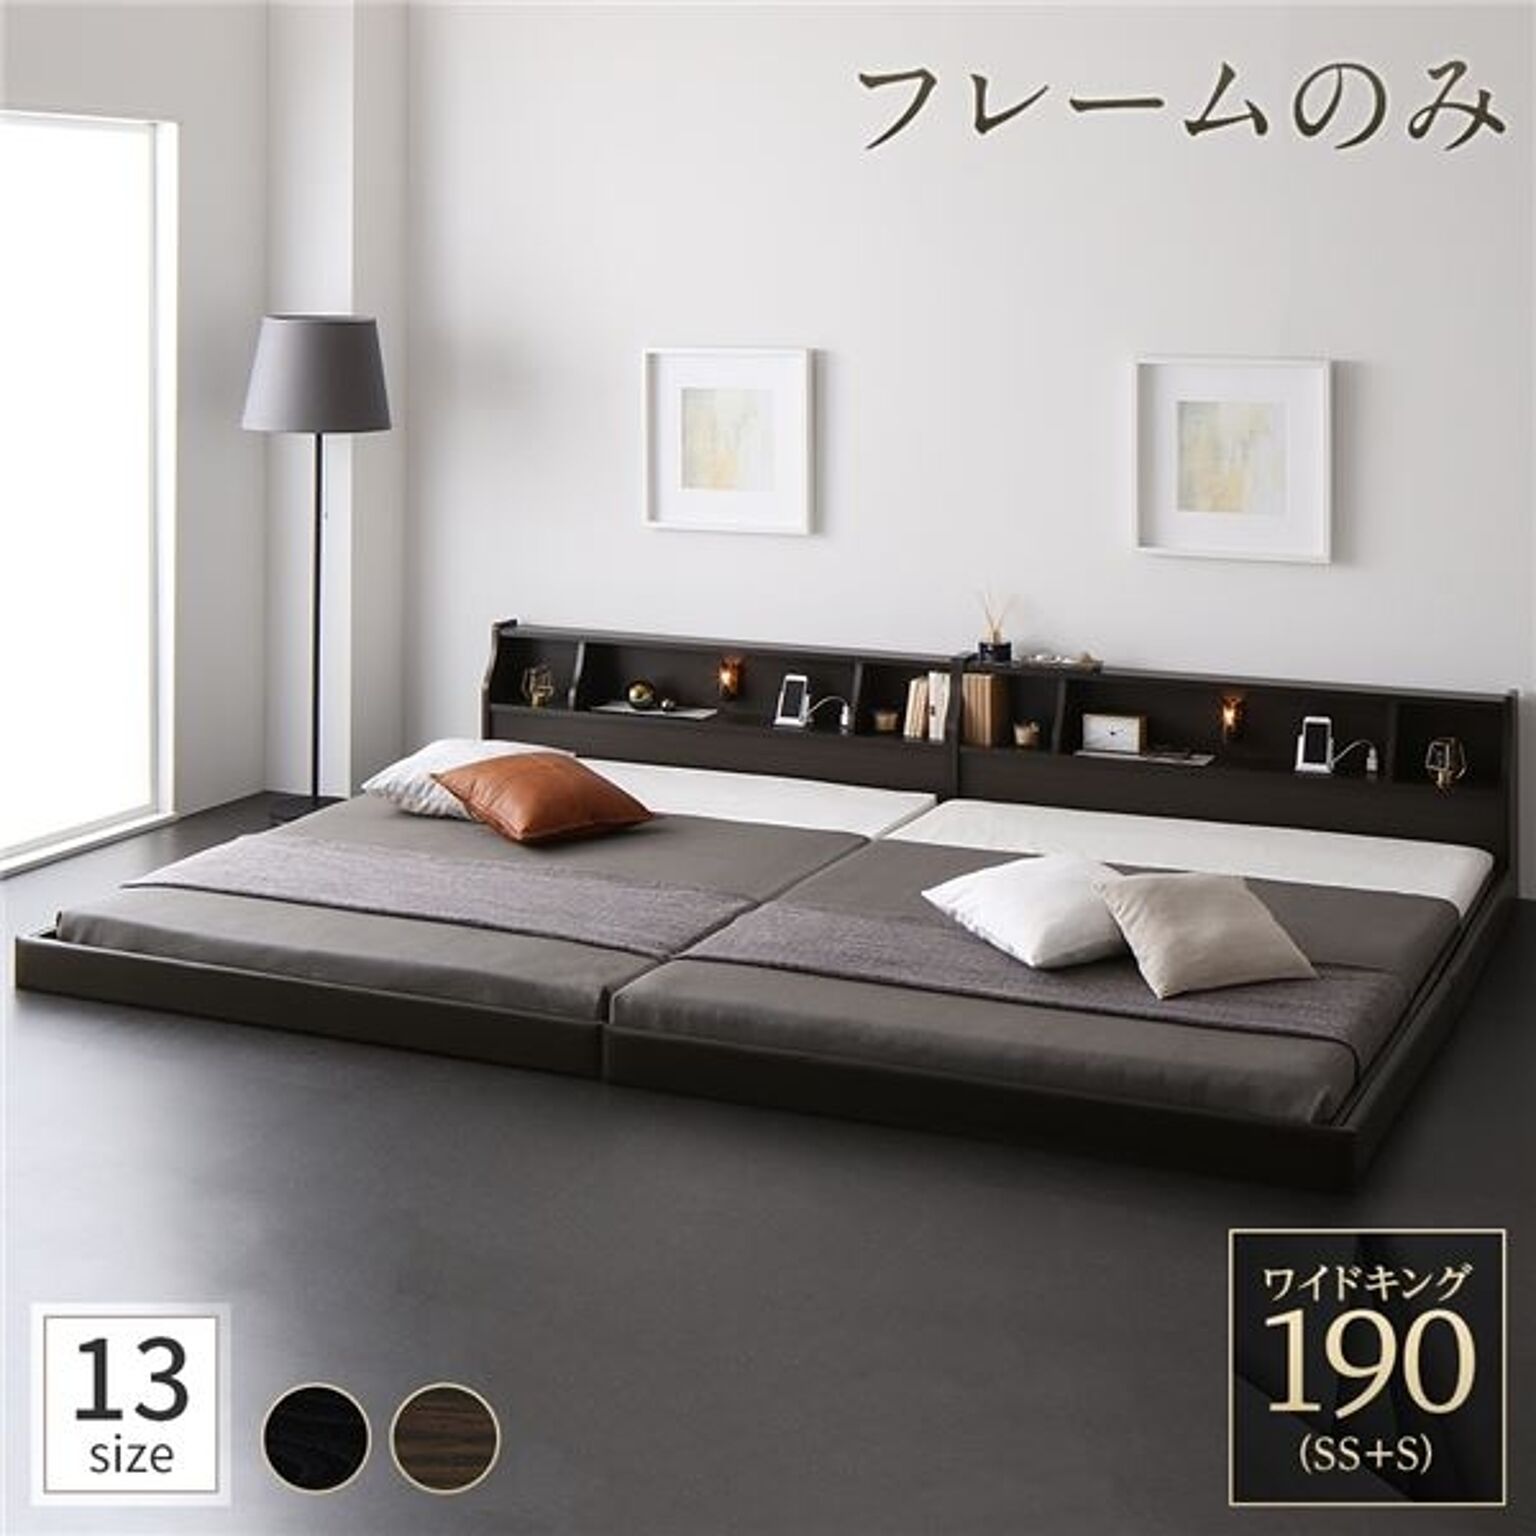 日本製 ワイドキング190 フレームのみ ベッド 低床 連結 ロータイプ